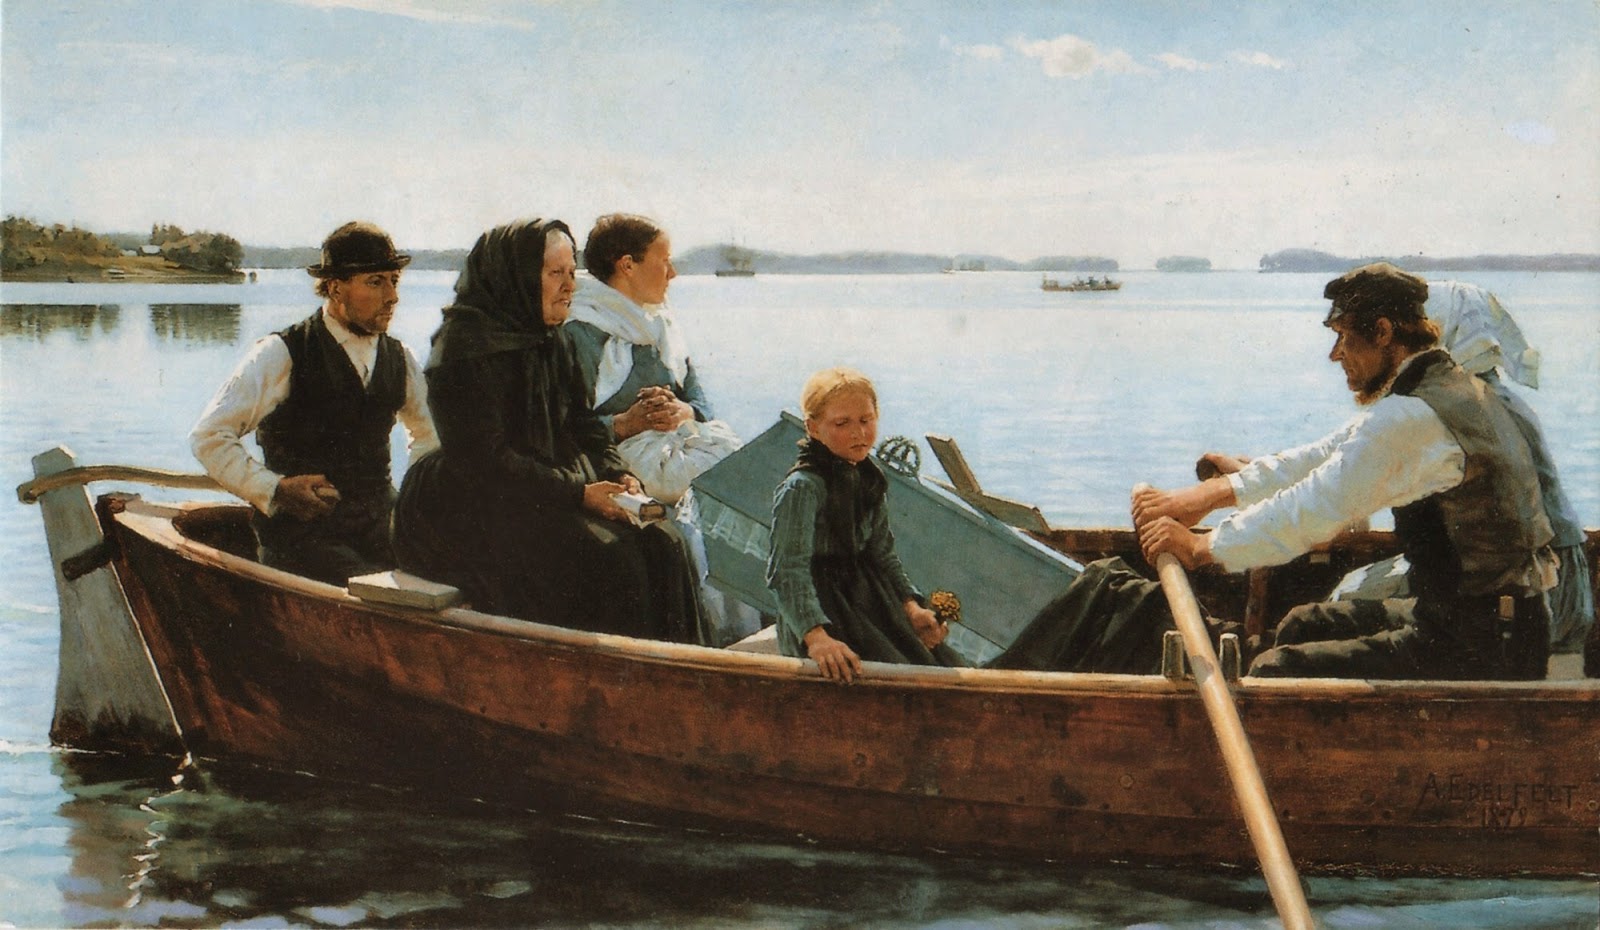 Finnish Genre Painter "Albert Gustaf Edelfelt" (1854-1905)